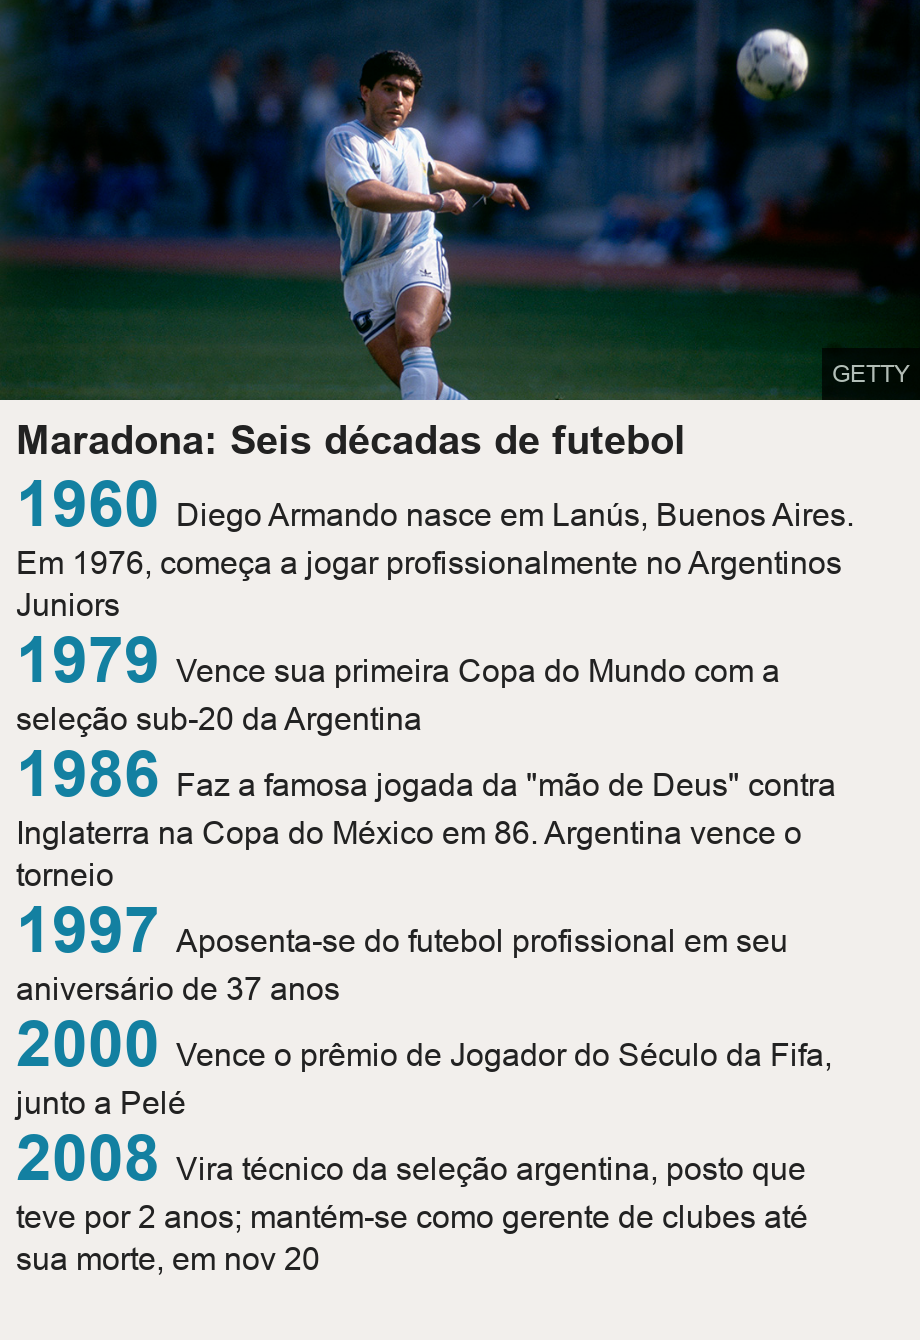 Maradona: Seis dcadas de futebol.   [ 1960 Diego Armando nasce em Lans, Buenos Aires. Em 1976, comea a jogar profissionalmente no Argentinos Juniors ],[ 1979 Vence sua primeira Copa do Mundo com a seleo sub-20 da Argentina  ],[ 1986 Faz a famosa jogada da 